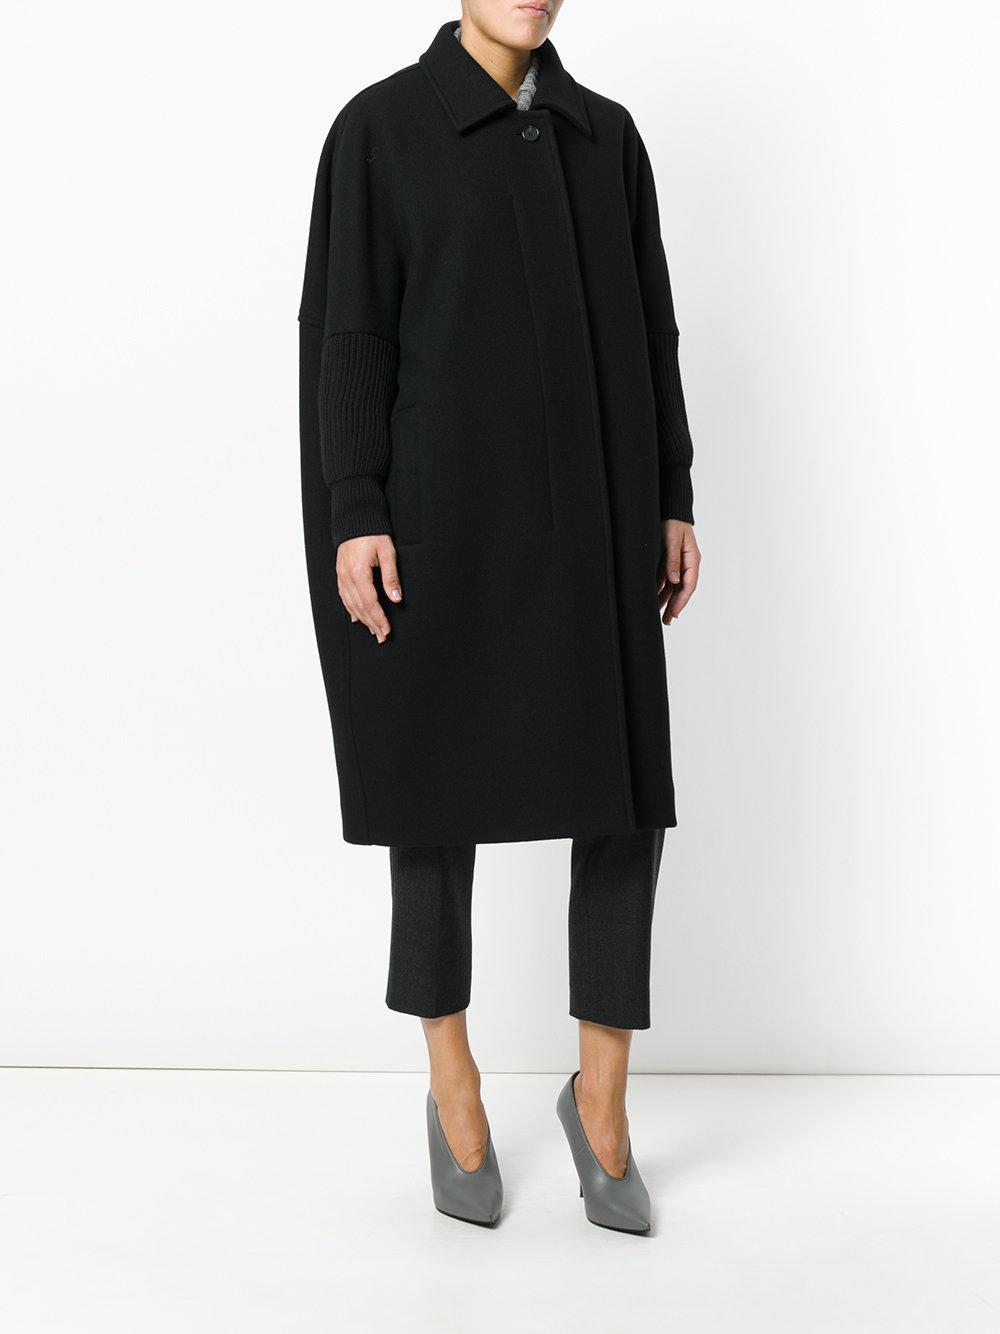 Lyst - Jil Sander Oversized Coat in Black